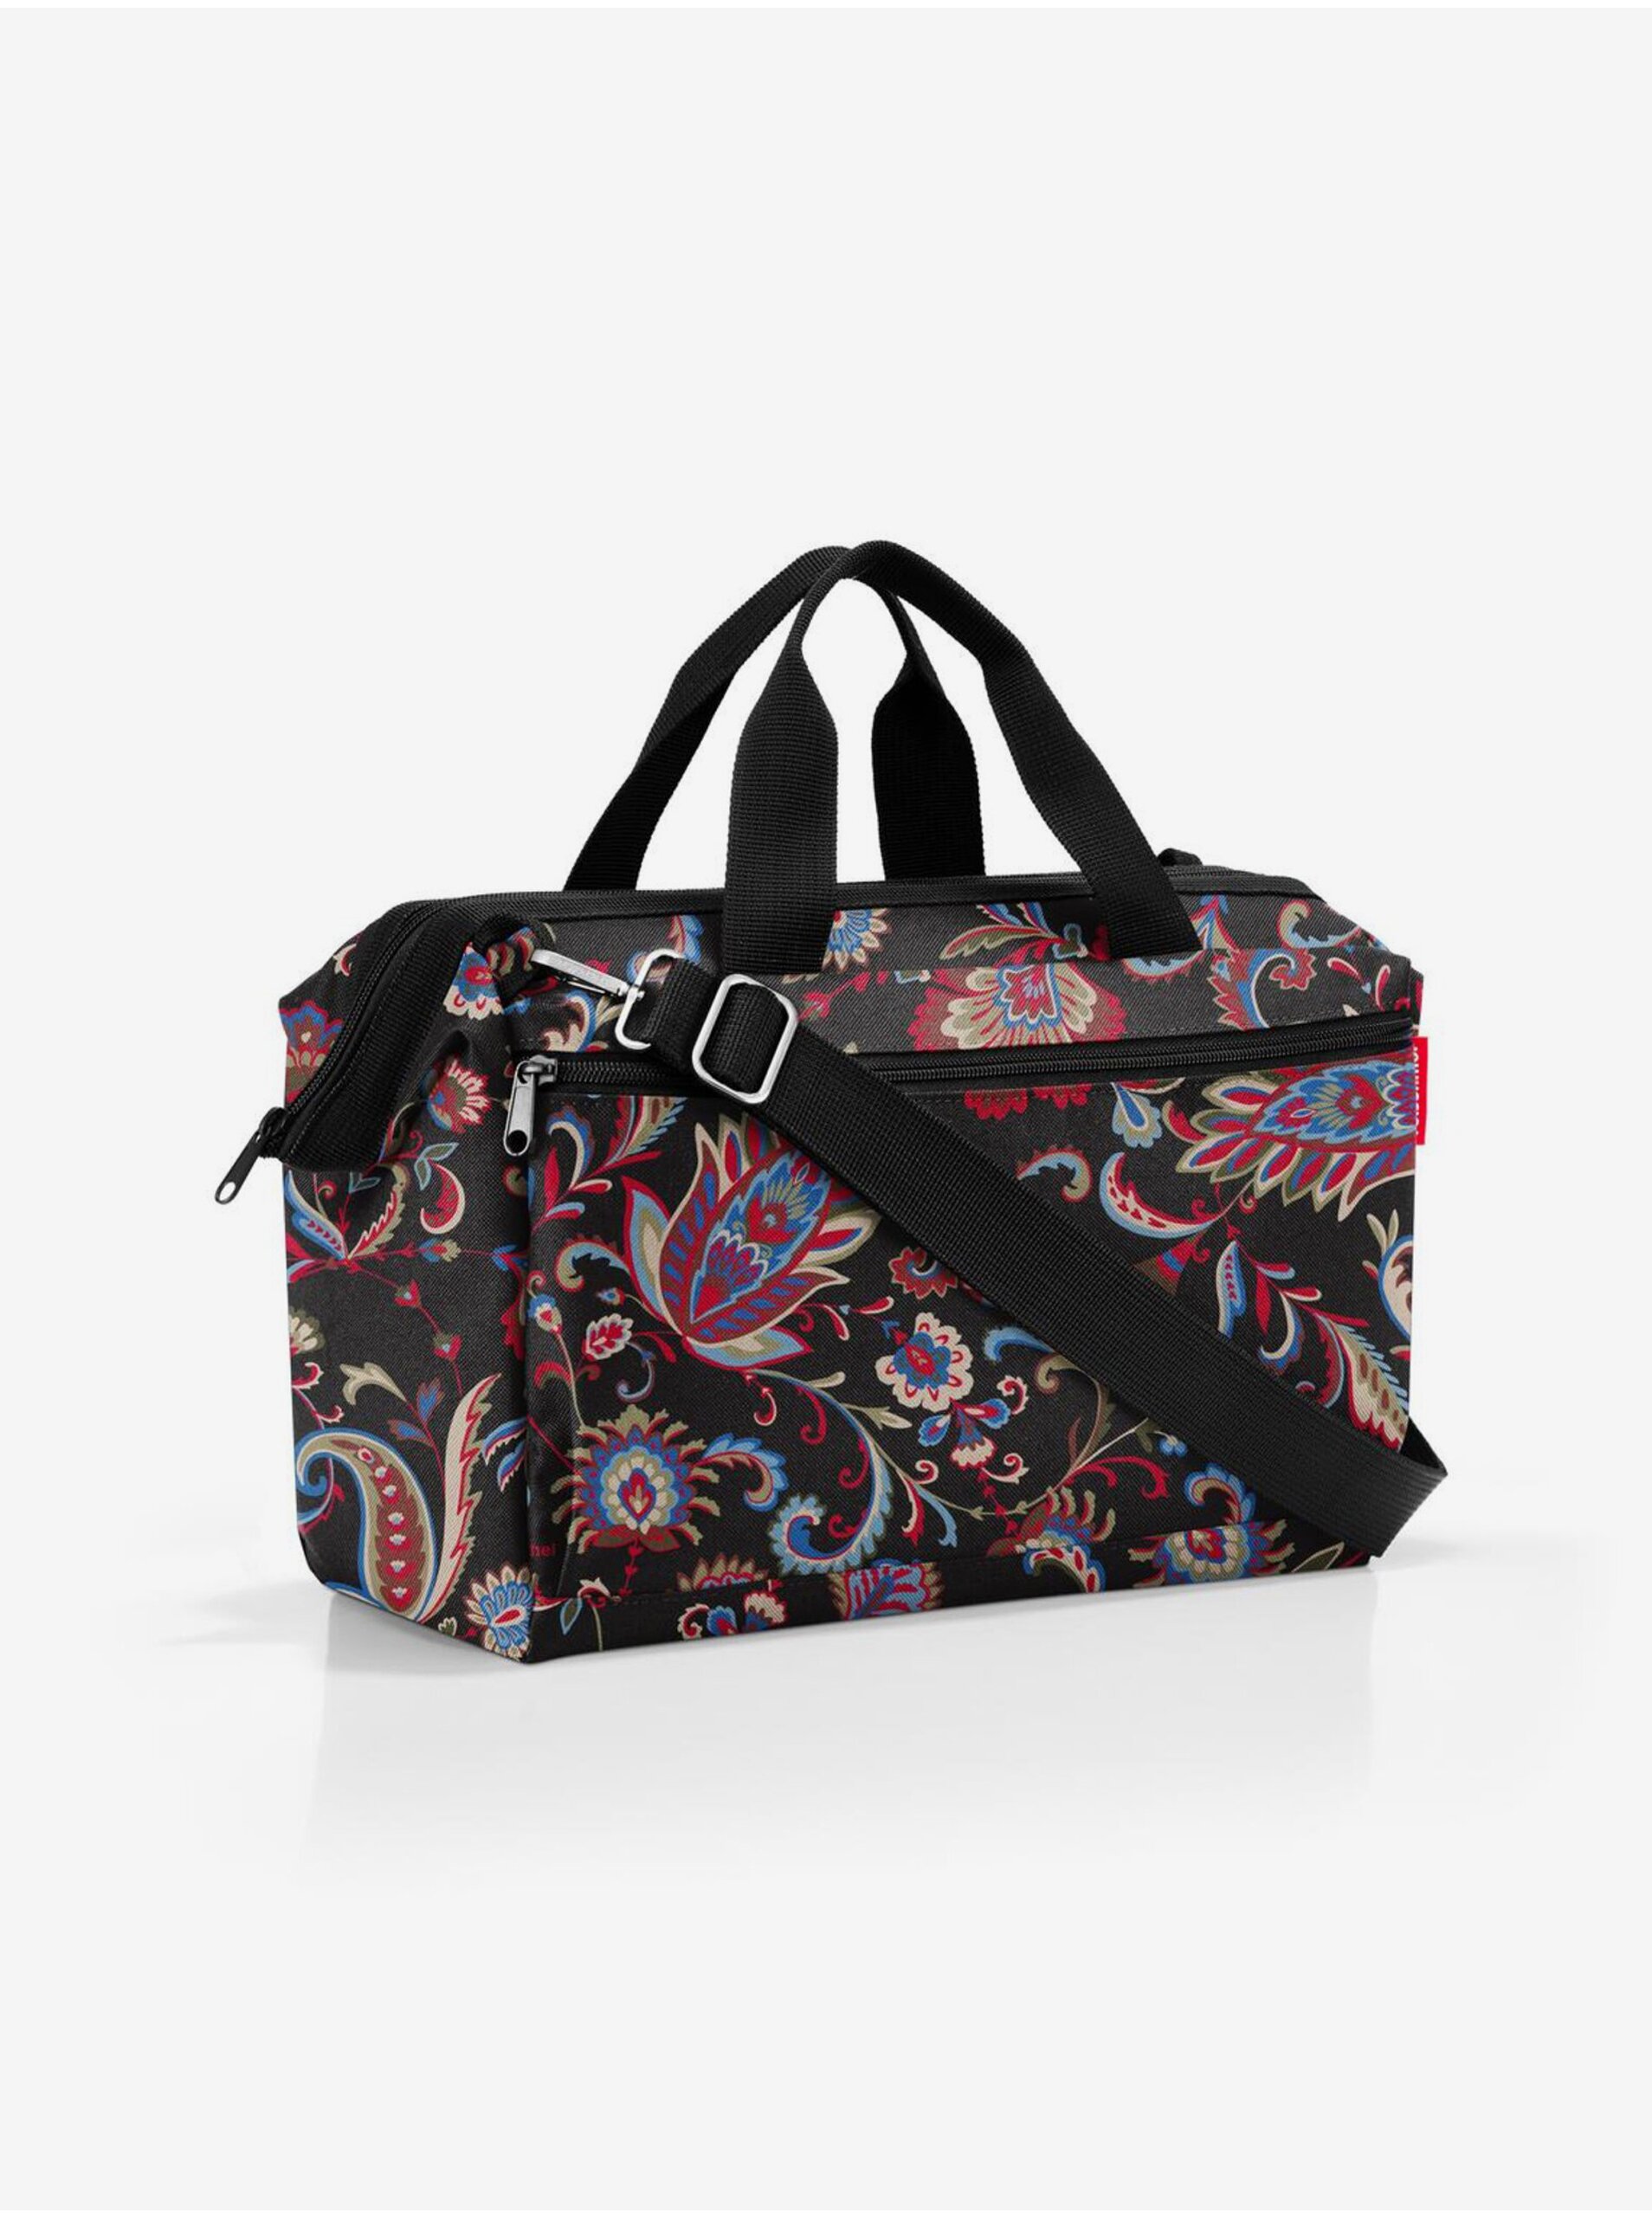 E-shop Vínovo-černá dámská vzorovaná cestovní taška Reisenthel Allrounder S Pocket Paisley Black